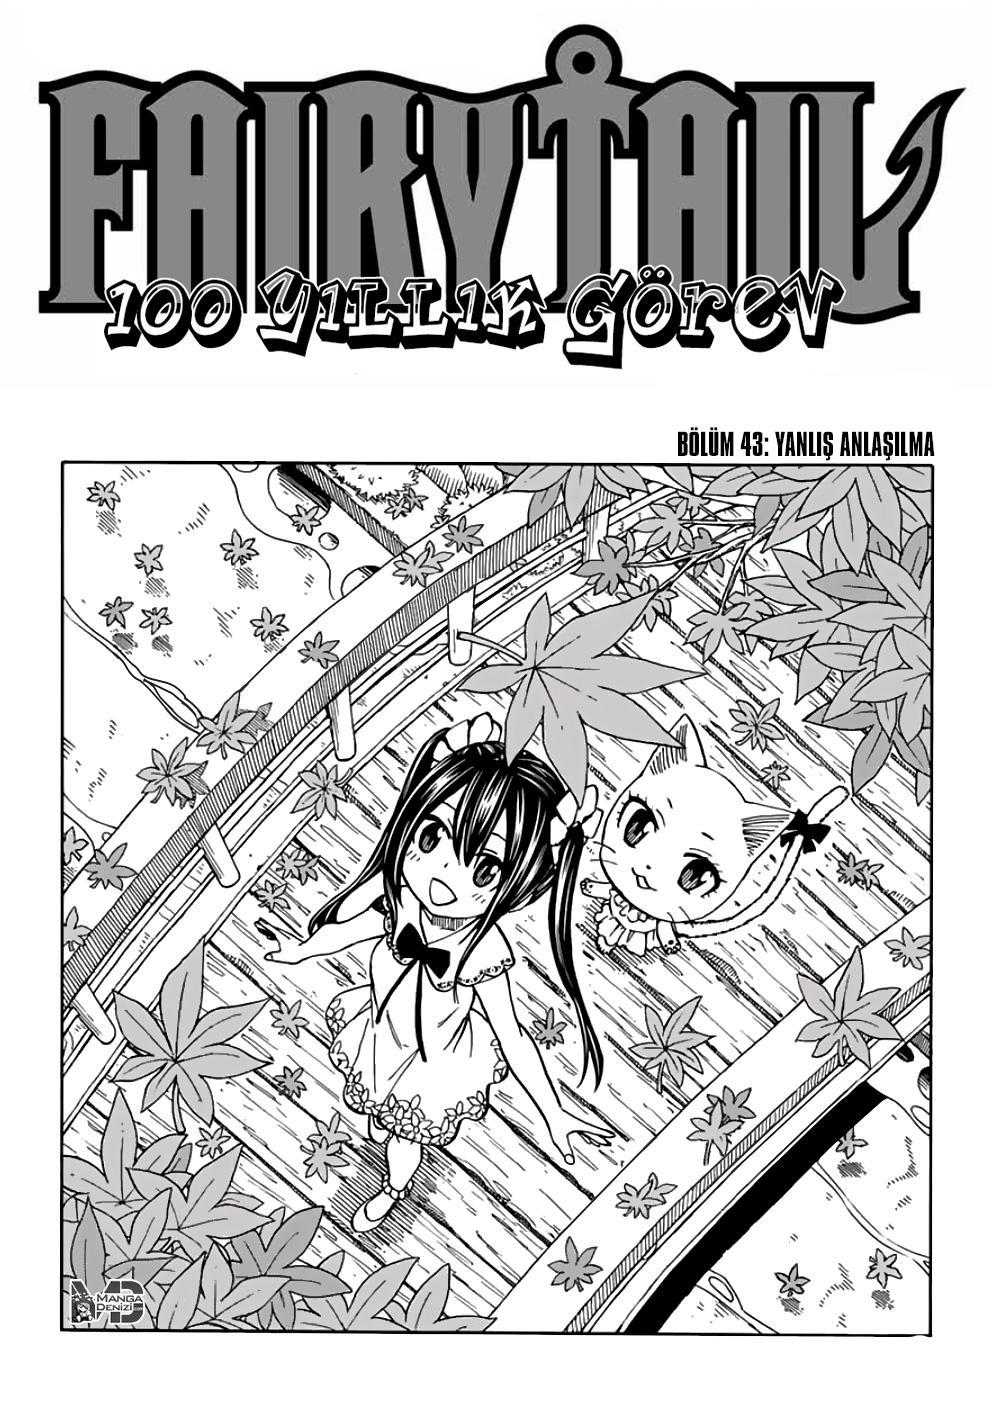 Fairy Tail: 100 Years Quest mangasının 043 bölümünün 2. sayfasını okuyorsunuz.